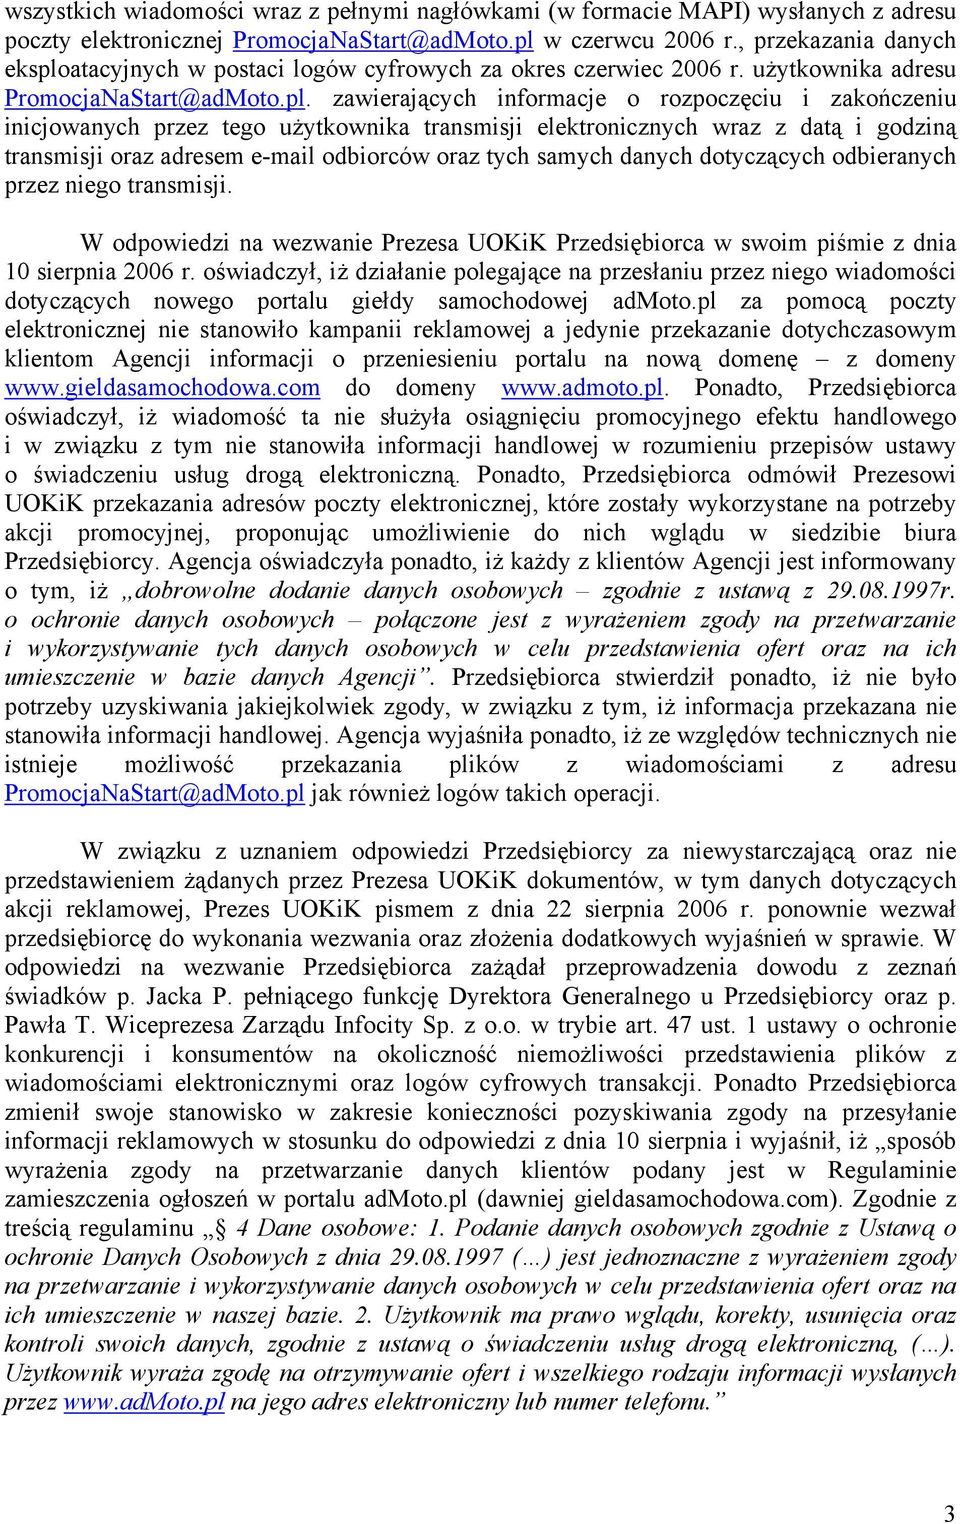 atacyjnych w postaci logów cyfrowych za okres czerwiec 2006 r. użytkownika adresu PromocjaNaStart@adMoto.pl.